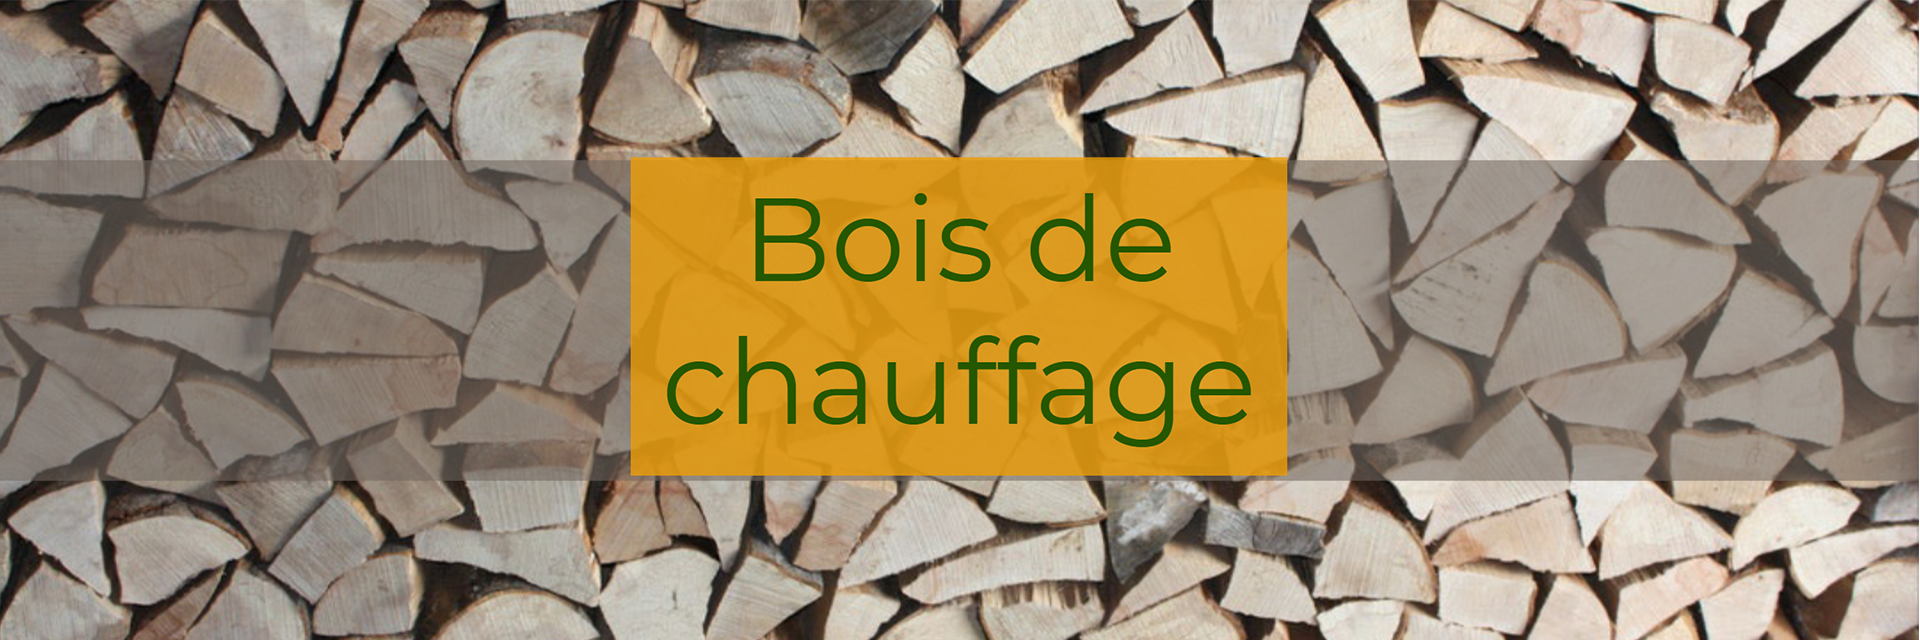 GESTION TERRES & TERRAINS LACHANCE
Entretien d'arbres dans la région de Portneuf et de Québec

